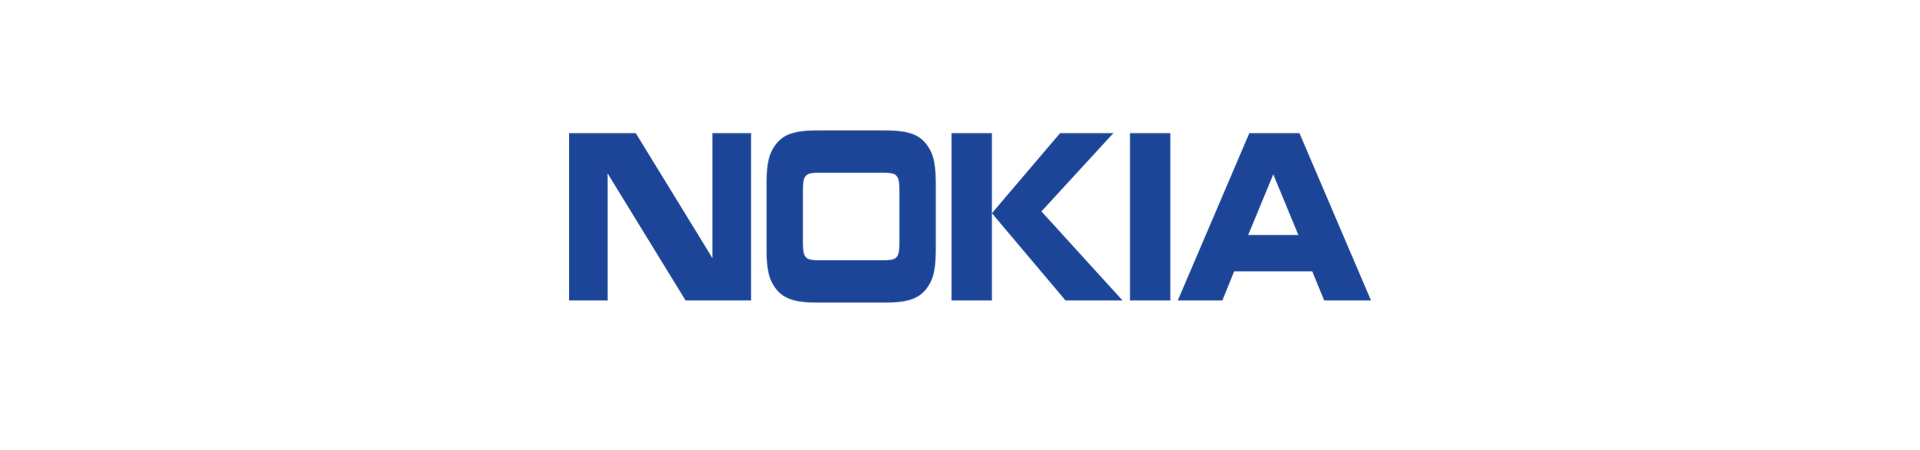 Nokia